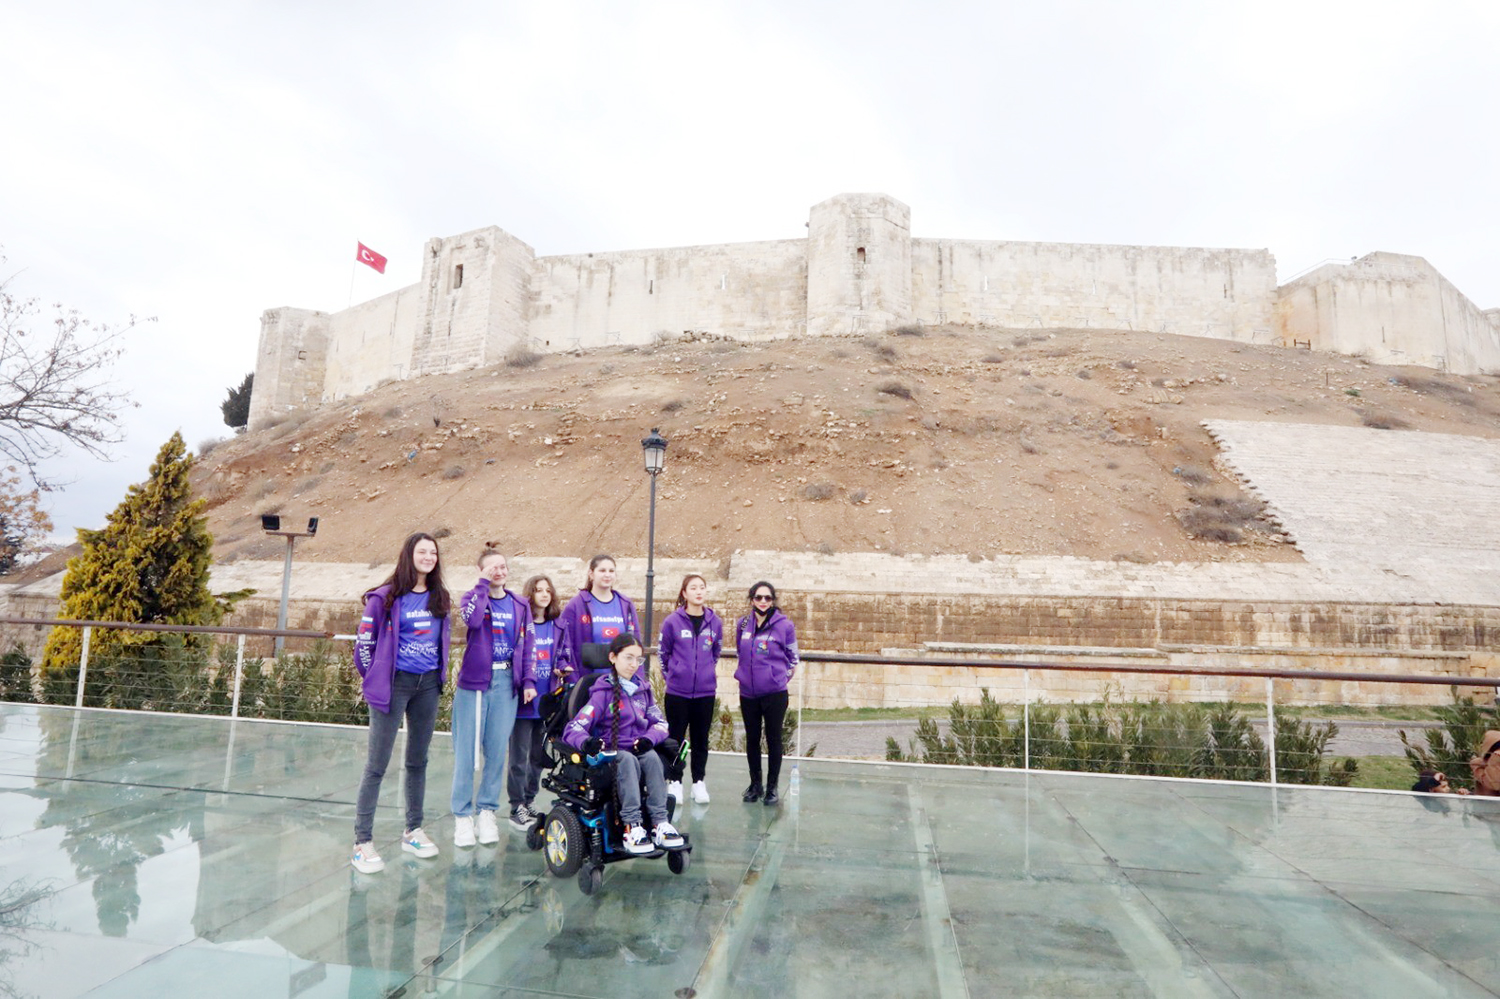 Kadın dron pilotları 8 Mart Dünya Kadınlar Günü’nde Gaziantep’te yarışacak